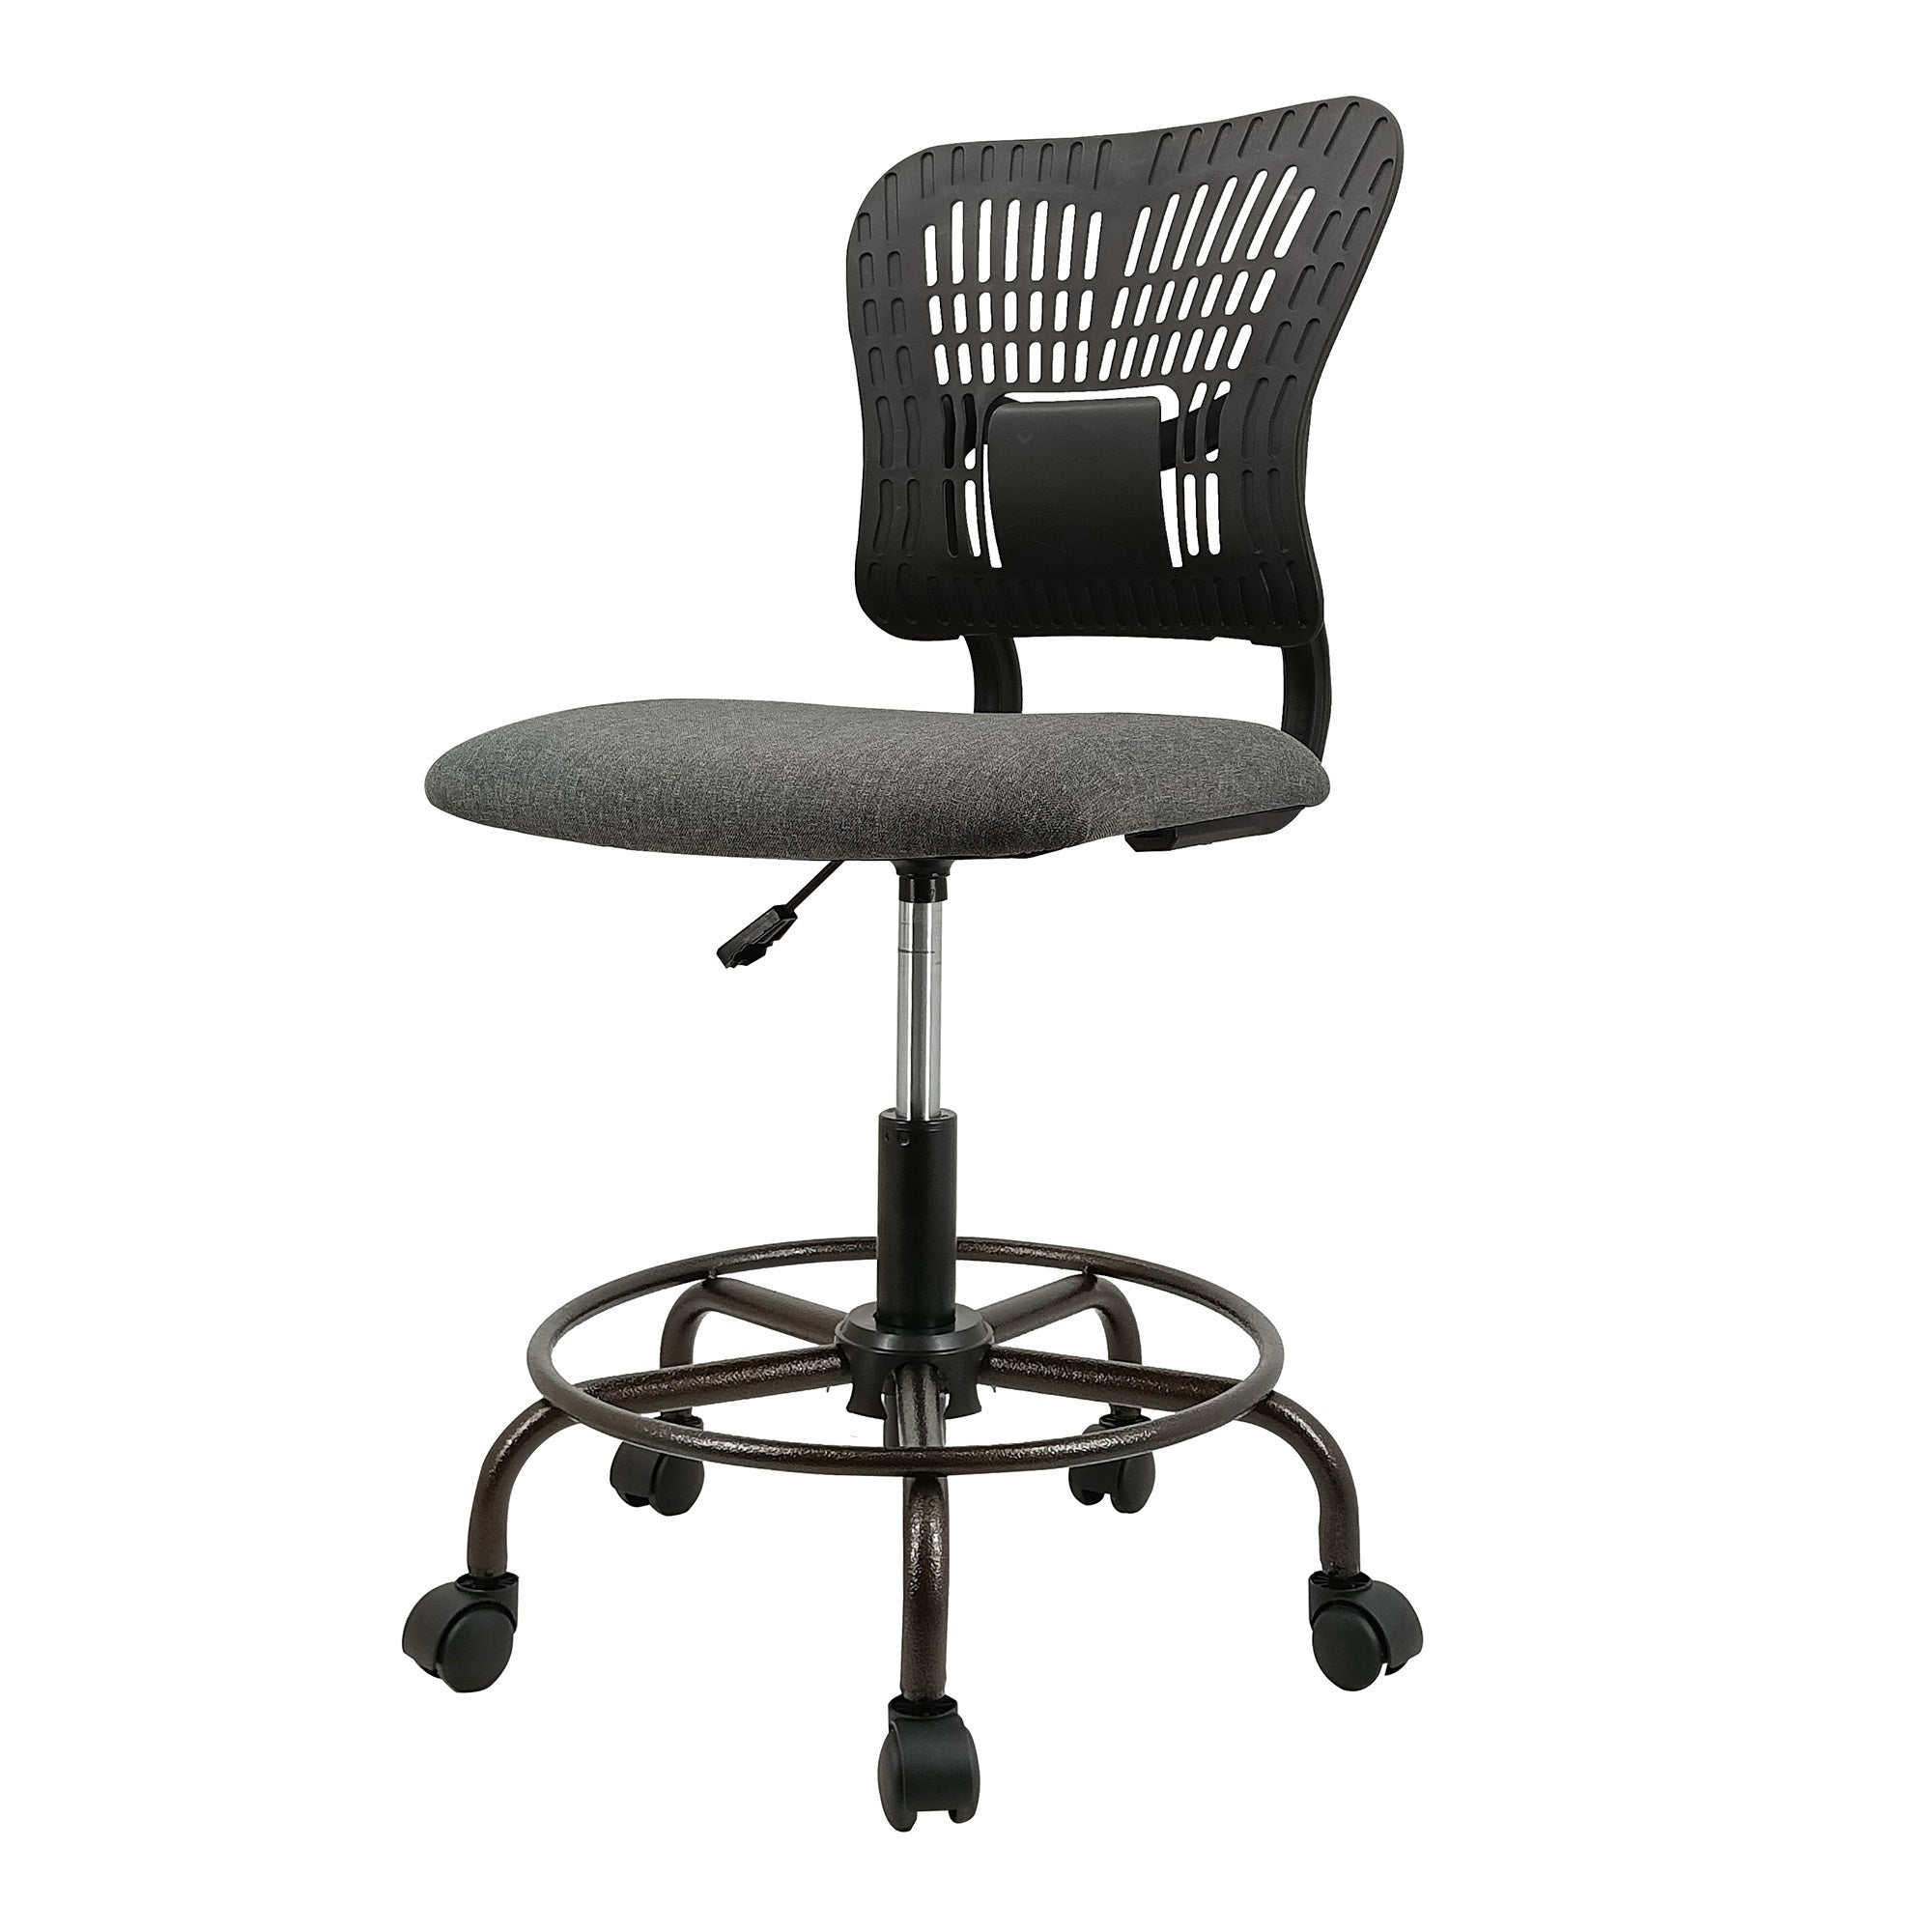 Ergonomic Tall Office Chair Standing Desk Chair